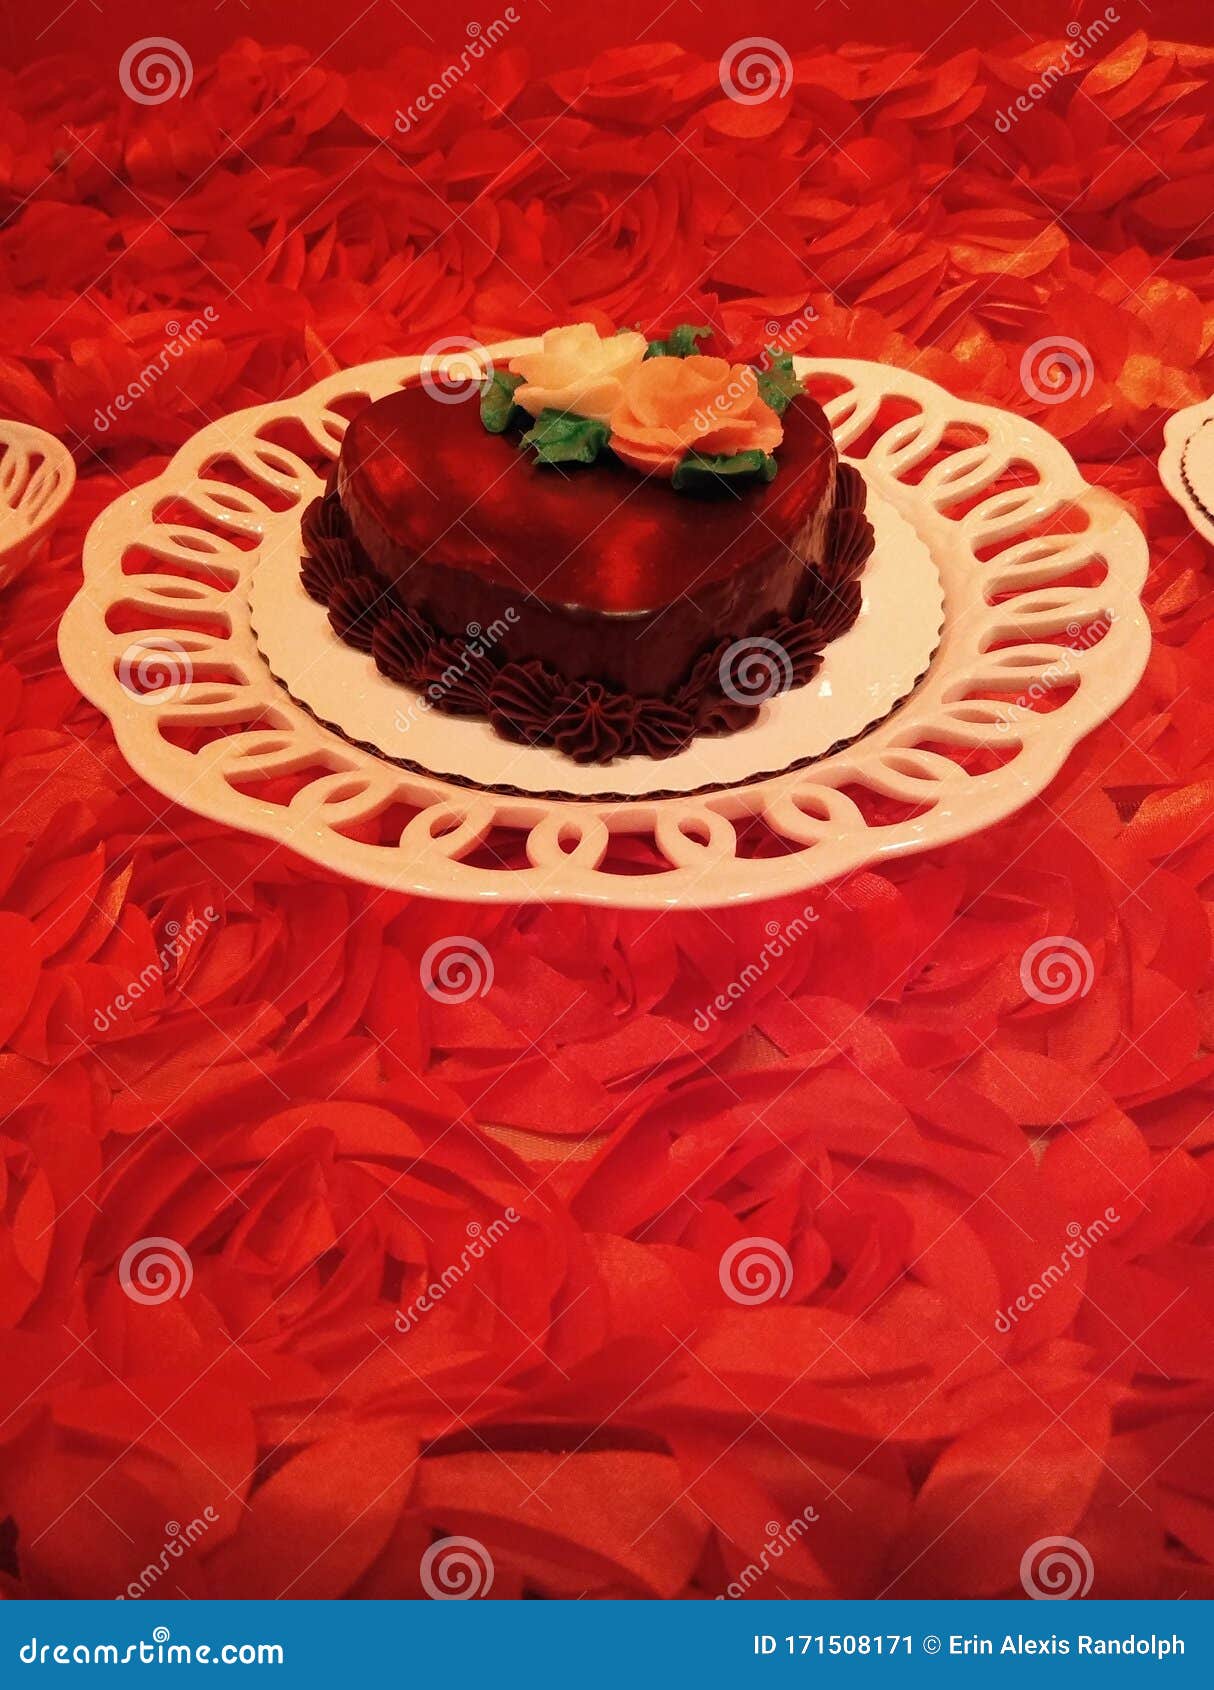 Pastel De Corazón De Chocolate, Rosas Rojas, Pétalos De Rosa, Romántico  Postre Del Día De San Valentín Imagen de archivo - Imagen de icing,  hermoso: 171508171